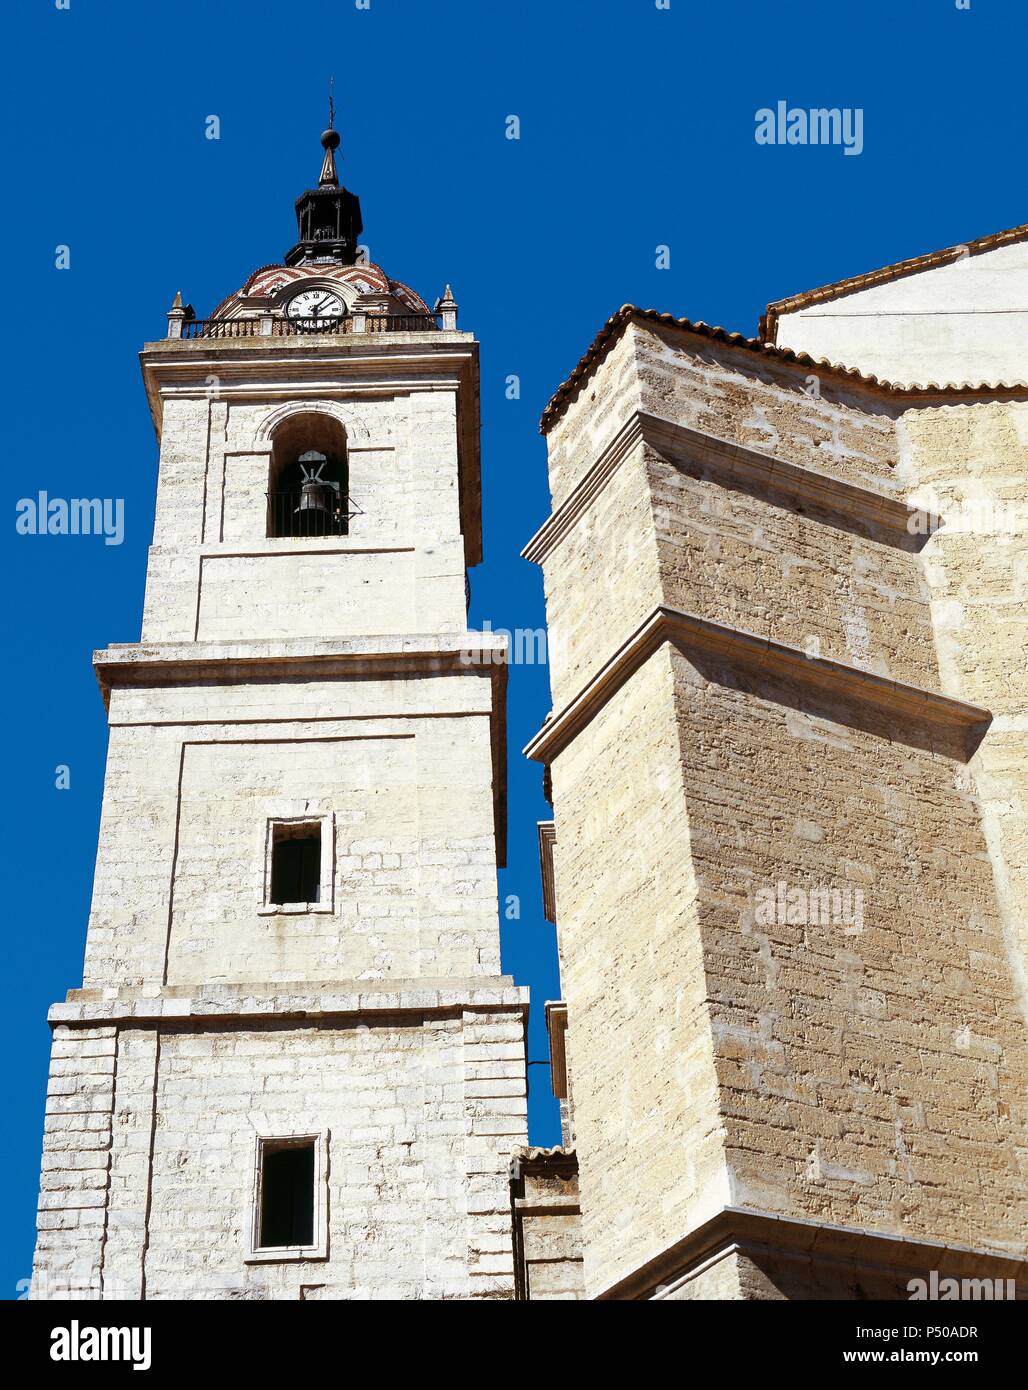 CASTILLA-LA MANCHA. CIUDAD REAL. Vista general de la torre de la IGLESIA DE SANTA MARIA DEL PRADO o LA MAYOR, con rango de CATEDRAL desde 1875. Dicha torre es una reconstrucción de 1825 de la que se derribó en el s. XVIII. España. Stock Photo